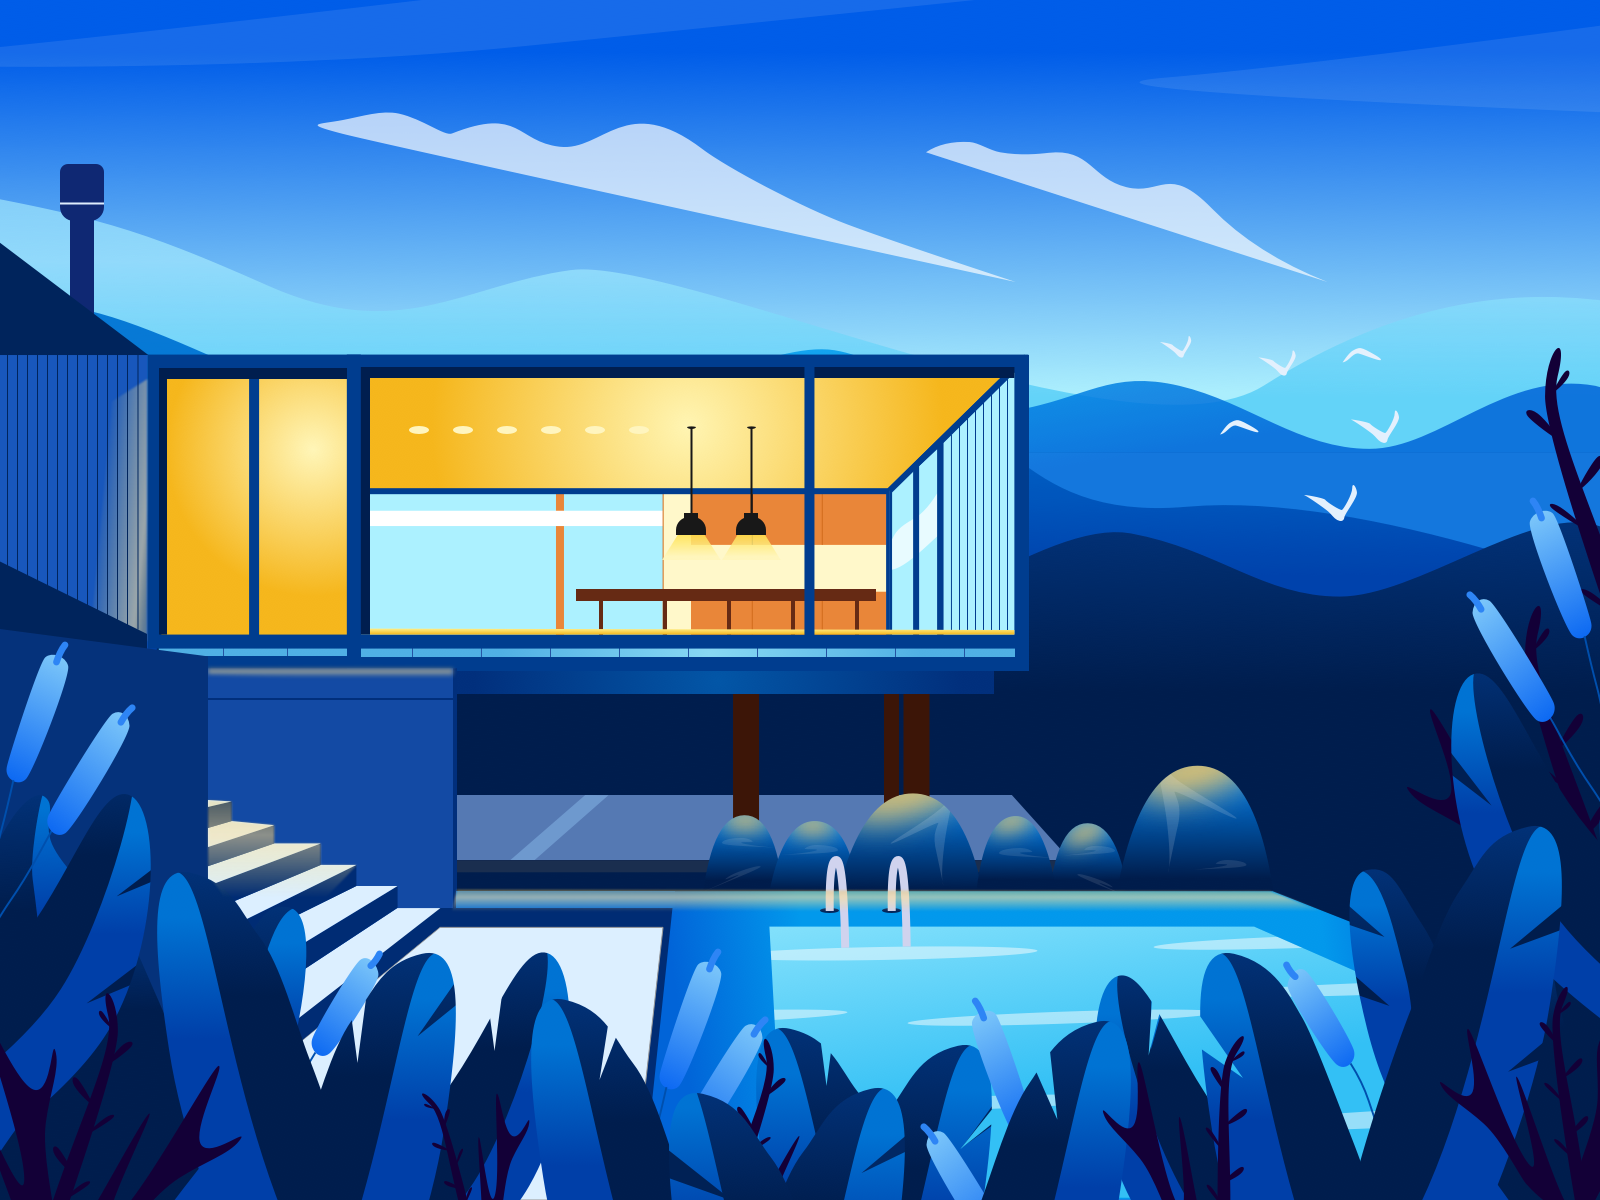 Villa 2019 illustration